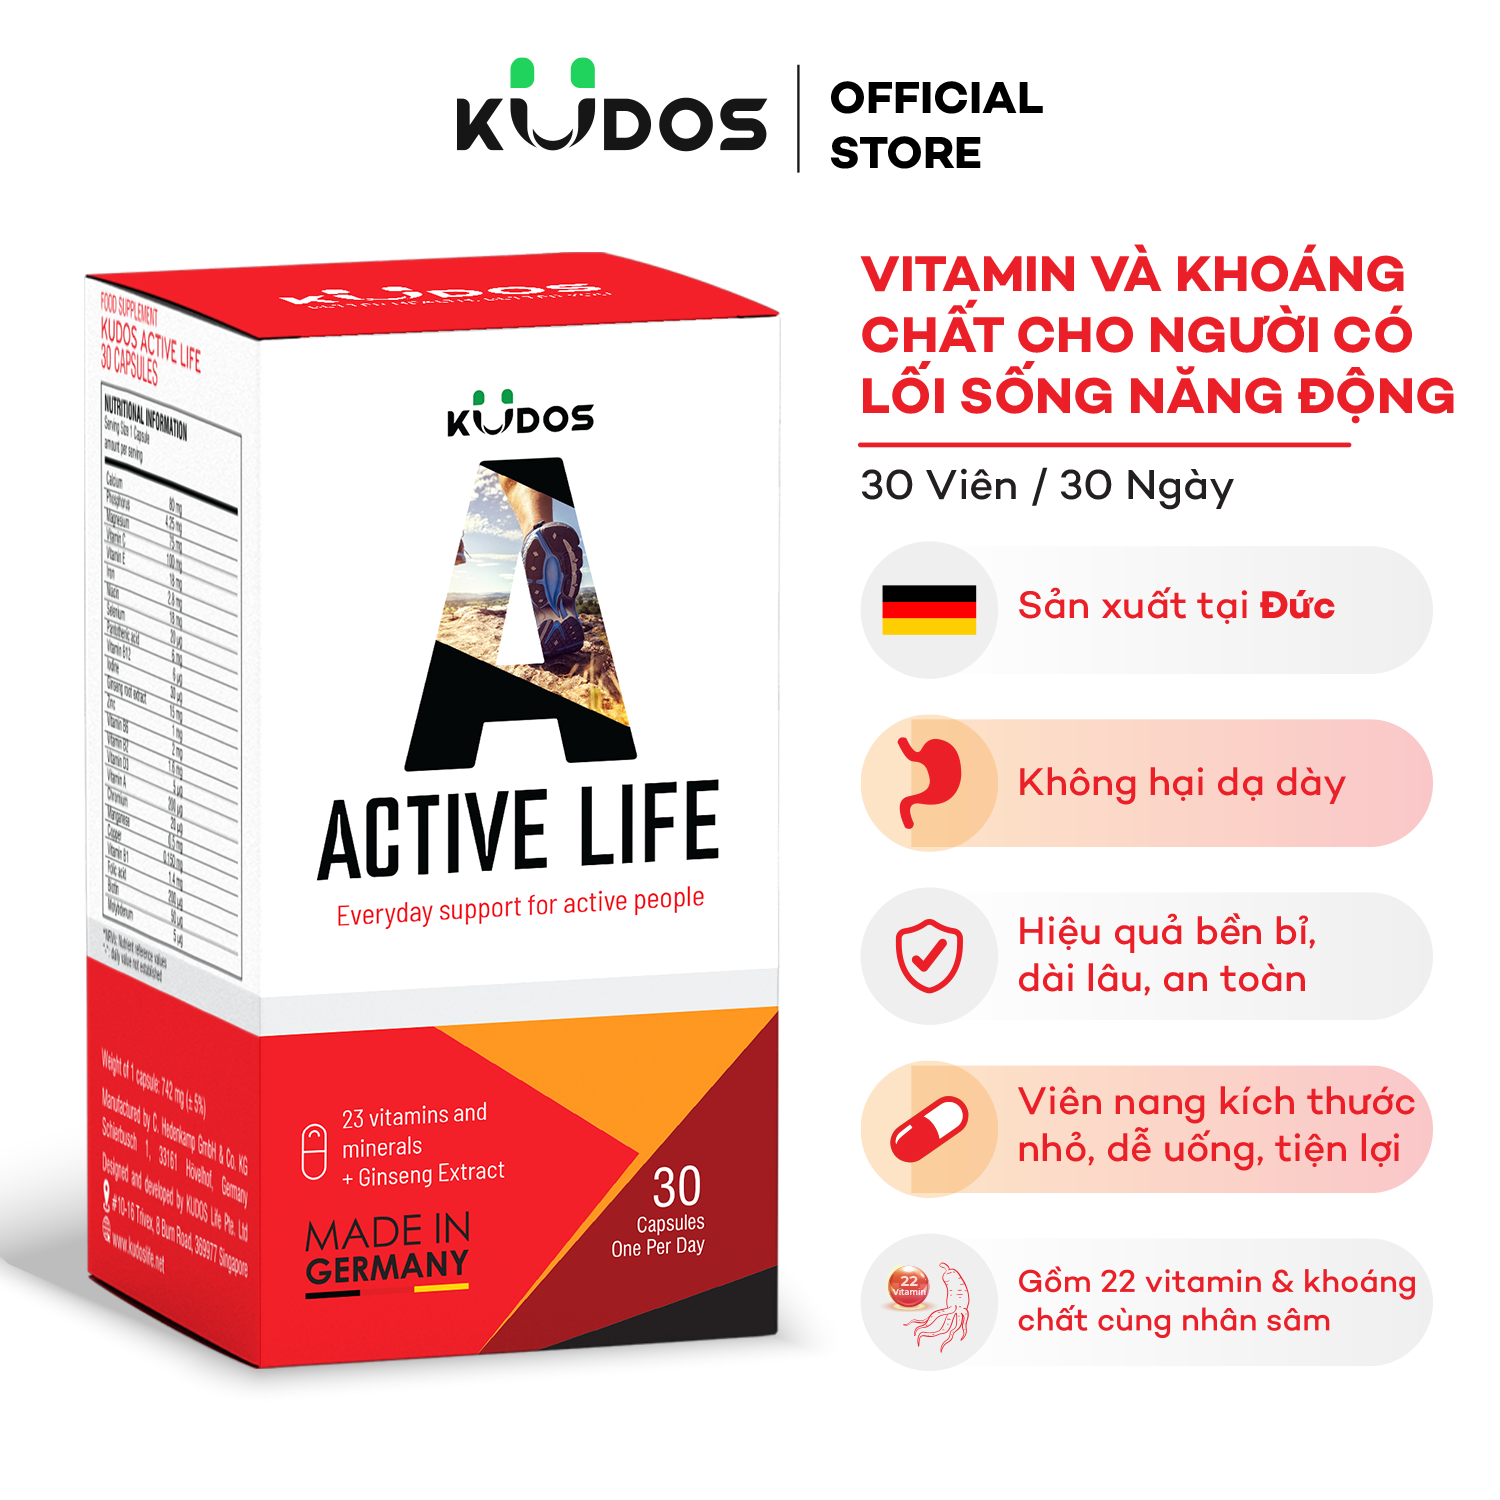 Viên Nang Bổ sung Vitamin và Khoáng Chất Tổng Hợp KUDOS ACTIVE LIFE (Hộp 30 Viên)